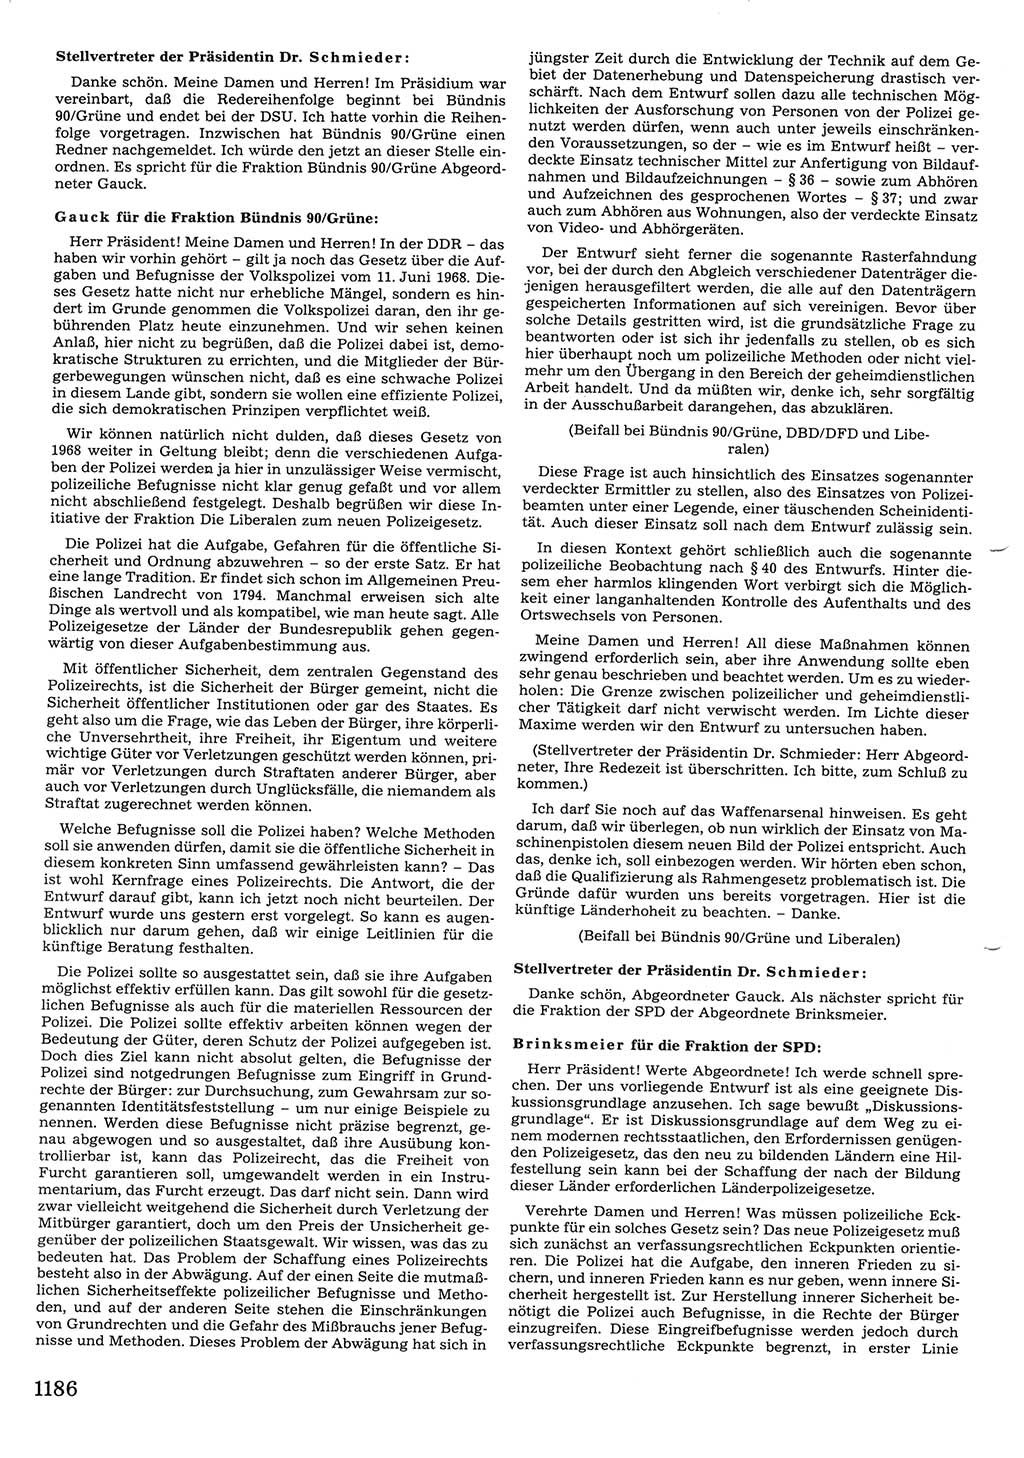 Tagungen der Volkskammer (VK) der Deutschen Demokratischen Republik (DDR), 10. Wahlperiode 1990, Seite 1186 (VK. DDR 10. WP. 1990, Prot. Tg. 1-38, 5.4.-2.10.1990, S. 1186)